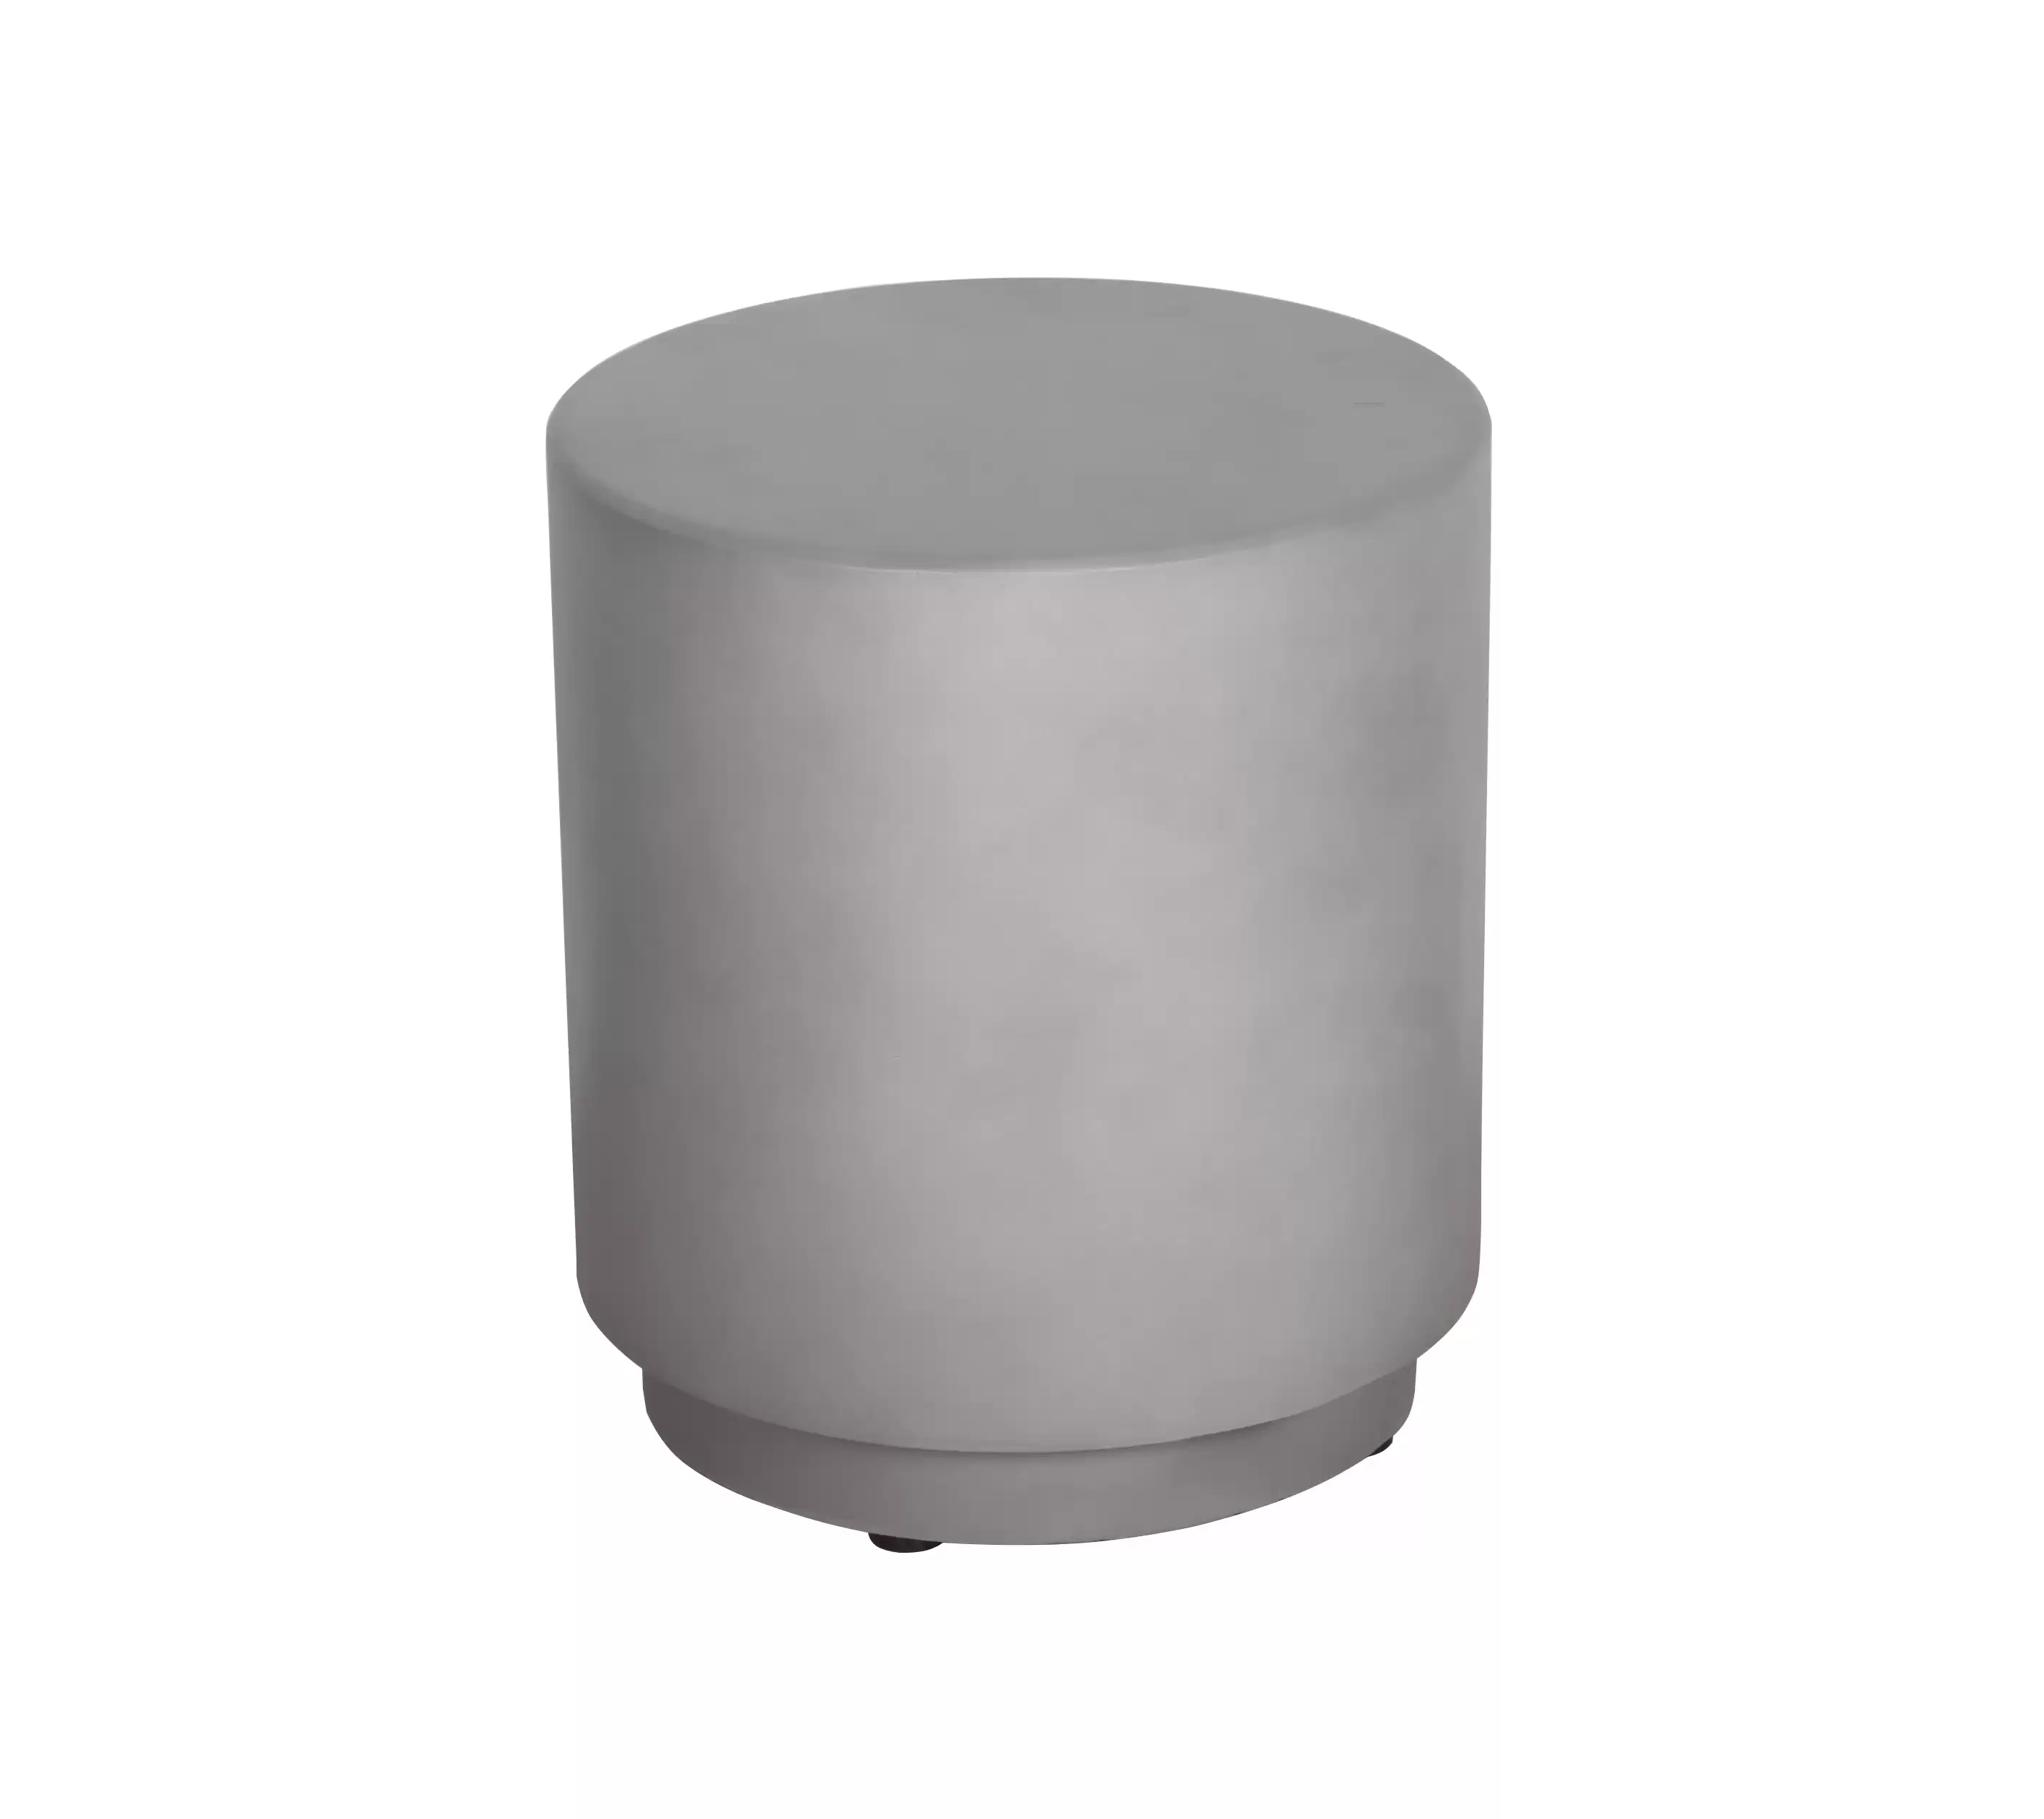 Faux-Beton-Akzent-Tisch in der grauen Farbe runden Form